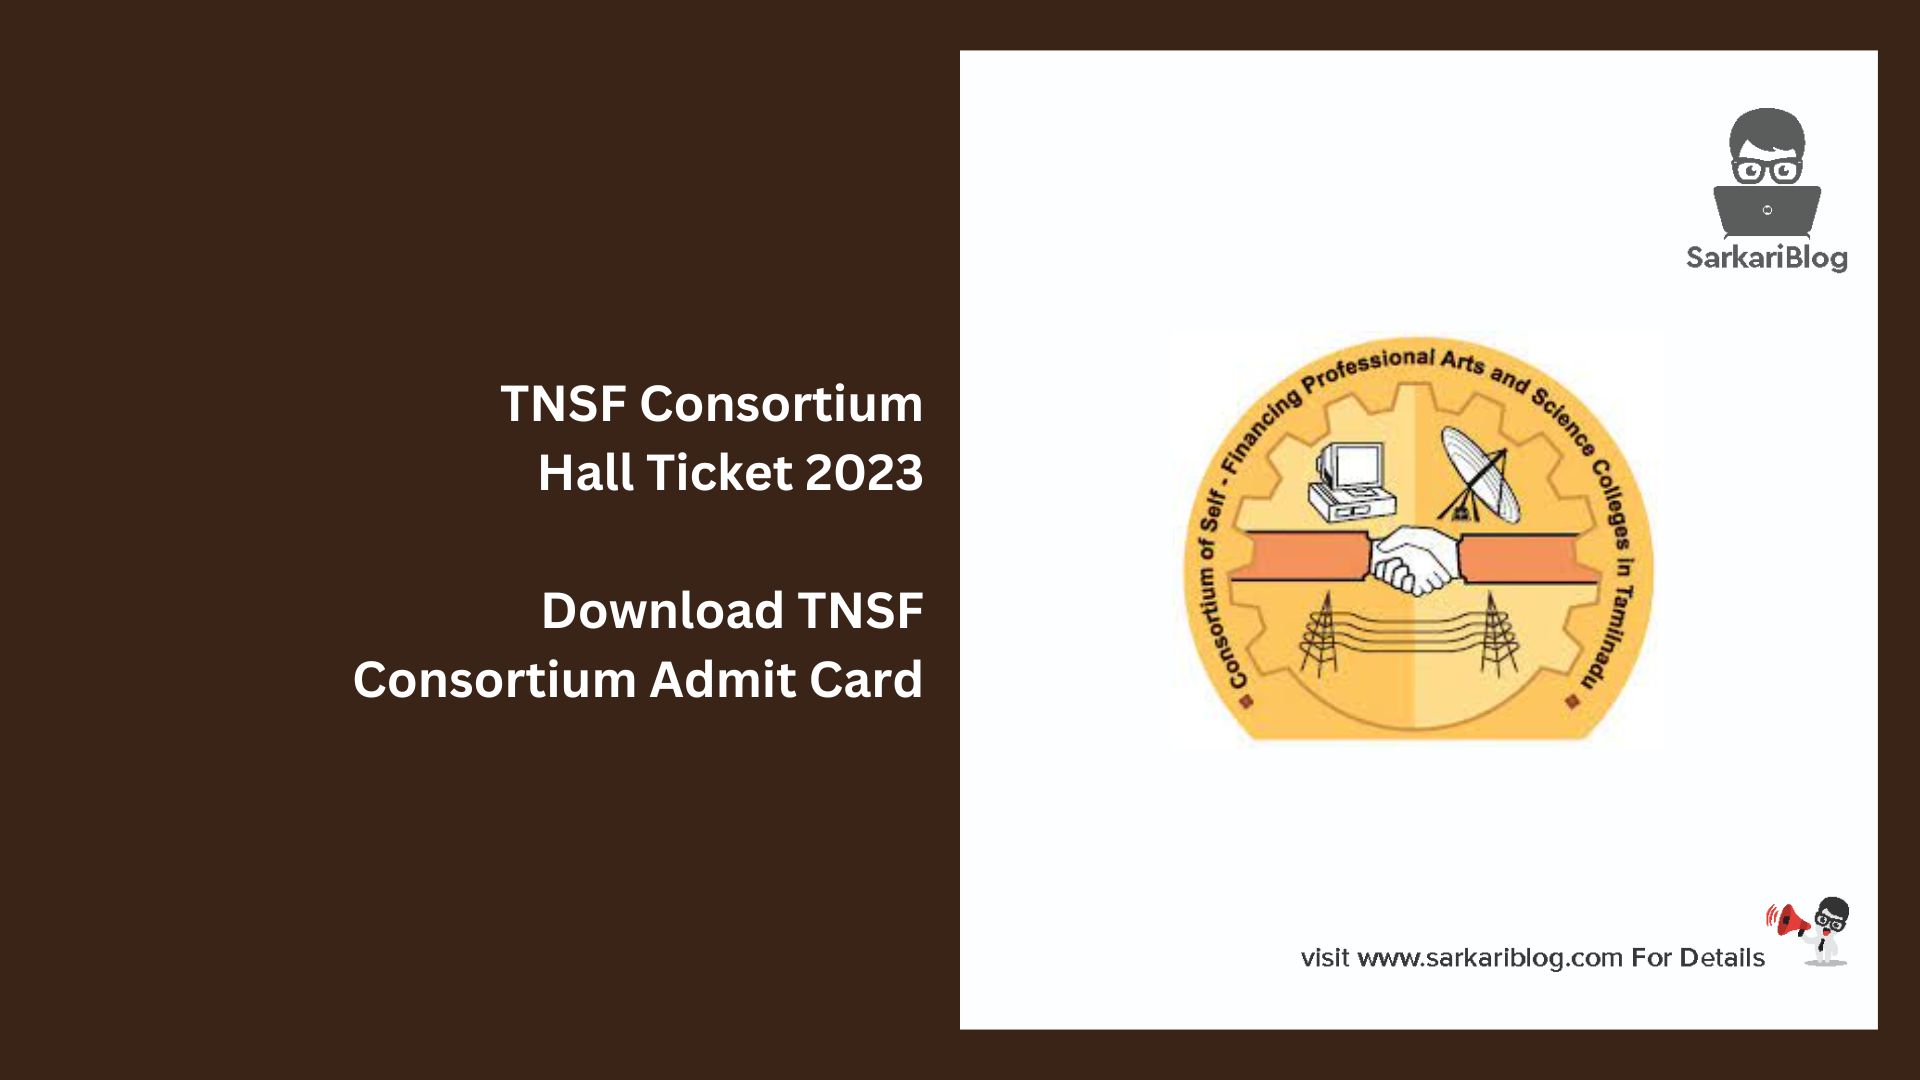 TNSF Consortium Hall Ticket 2023